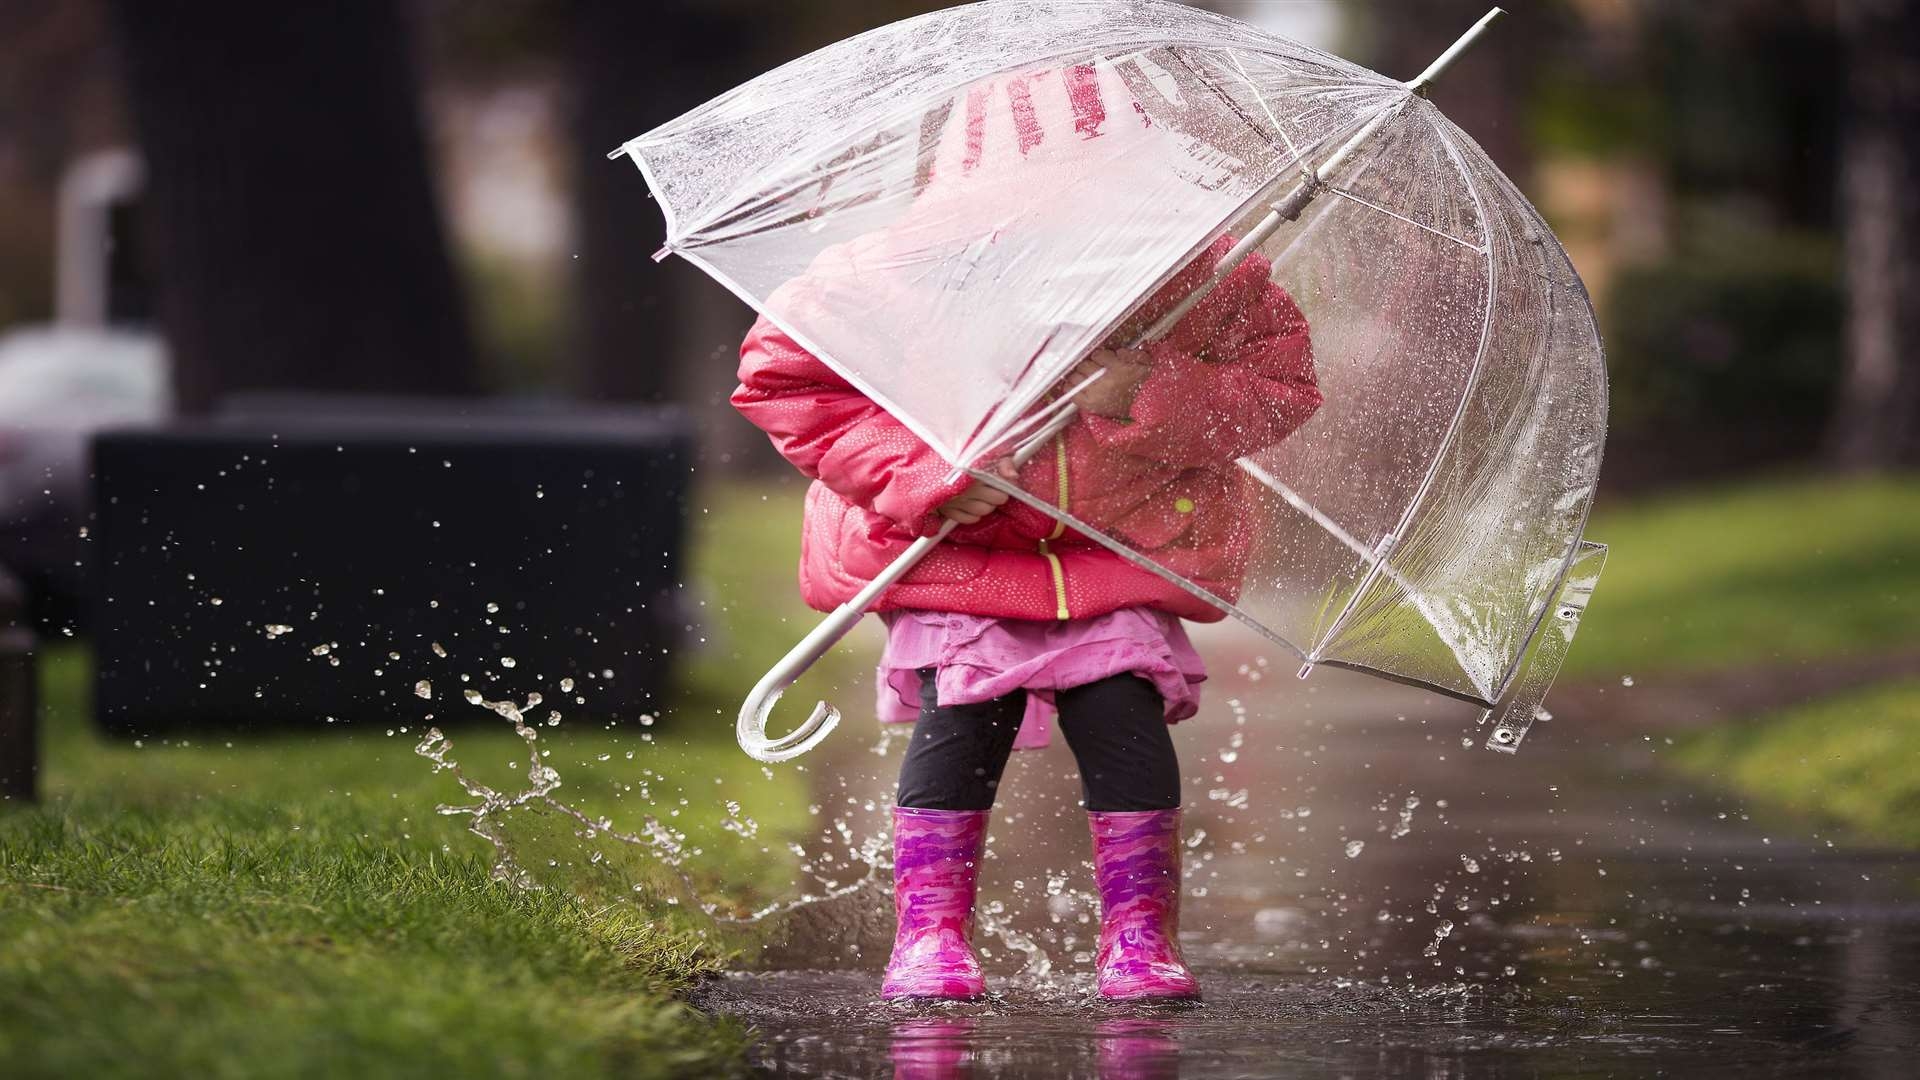 Тема дождливая погода. Дети под зонтом. Зонтик под дождем. Девочка под зонтиком. Зонтик для детей.